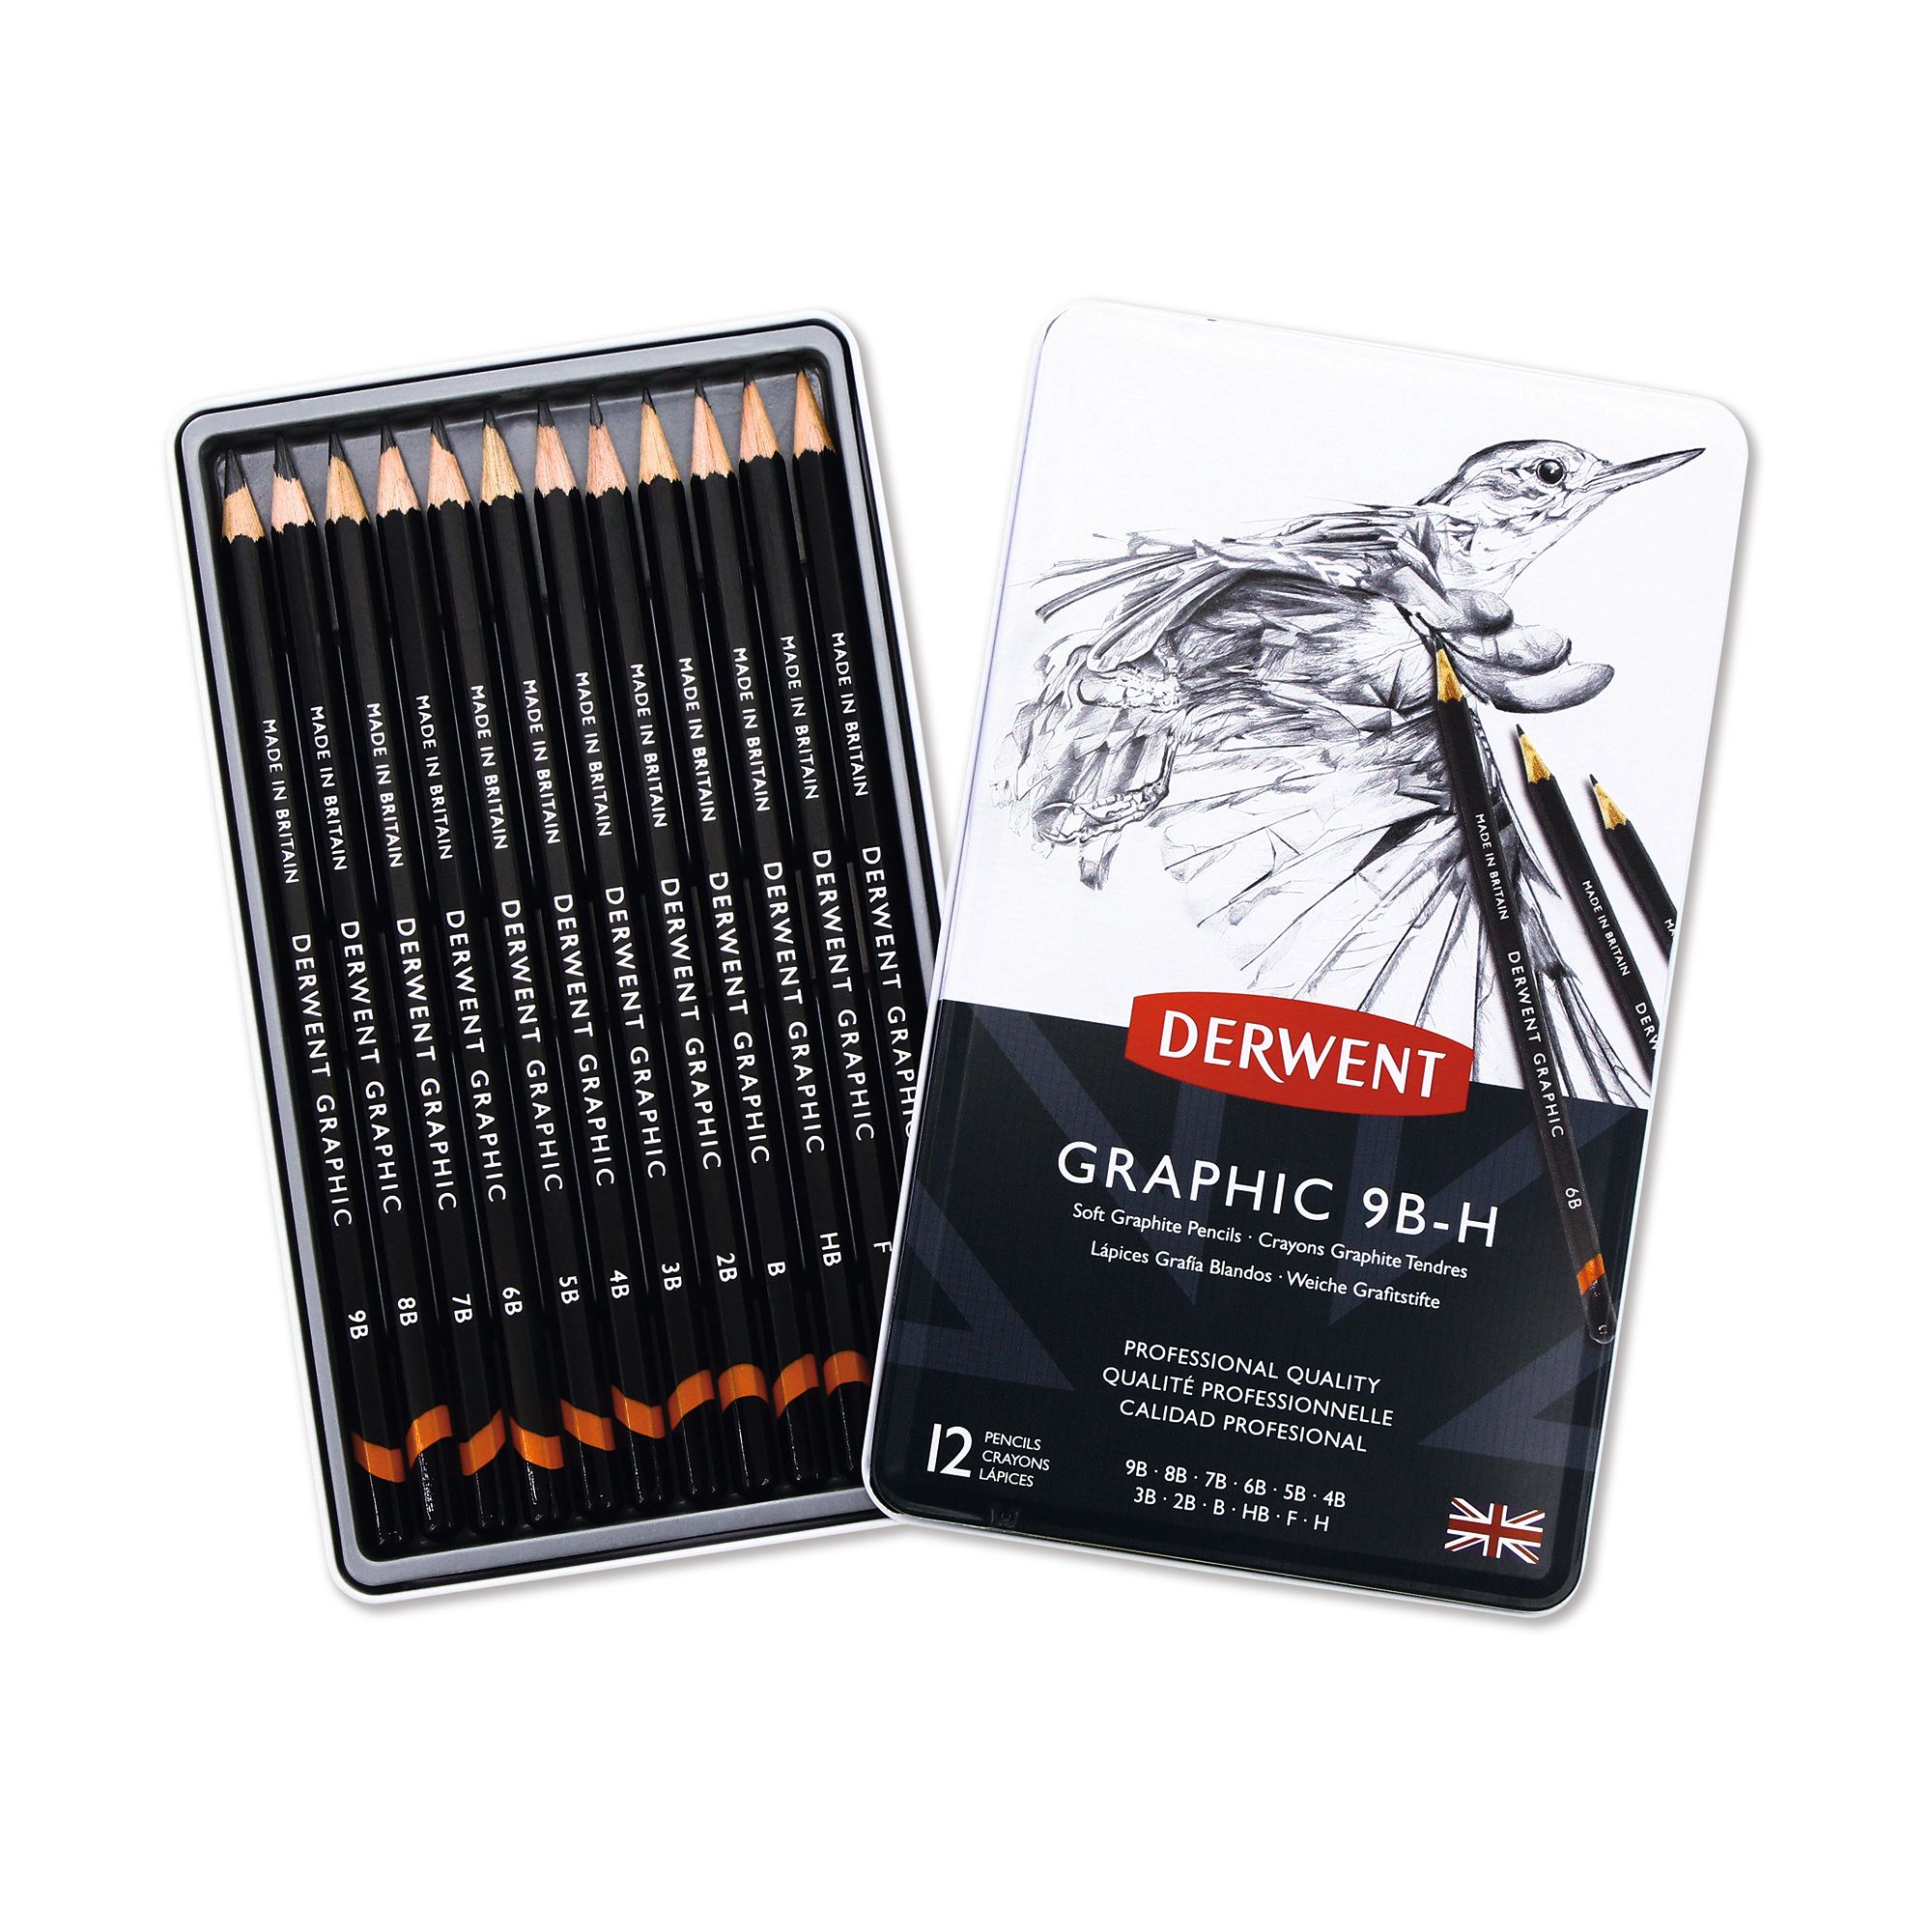 DerwentGraphic Soft PencilsP12